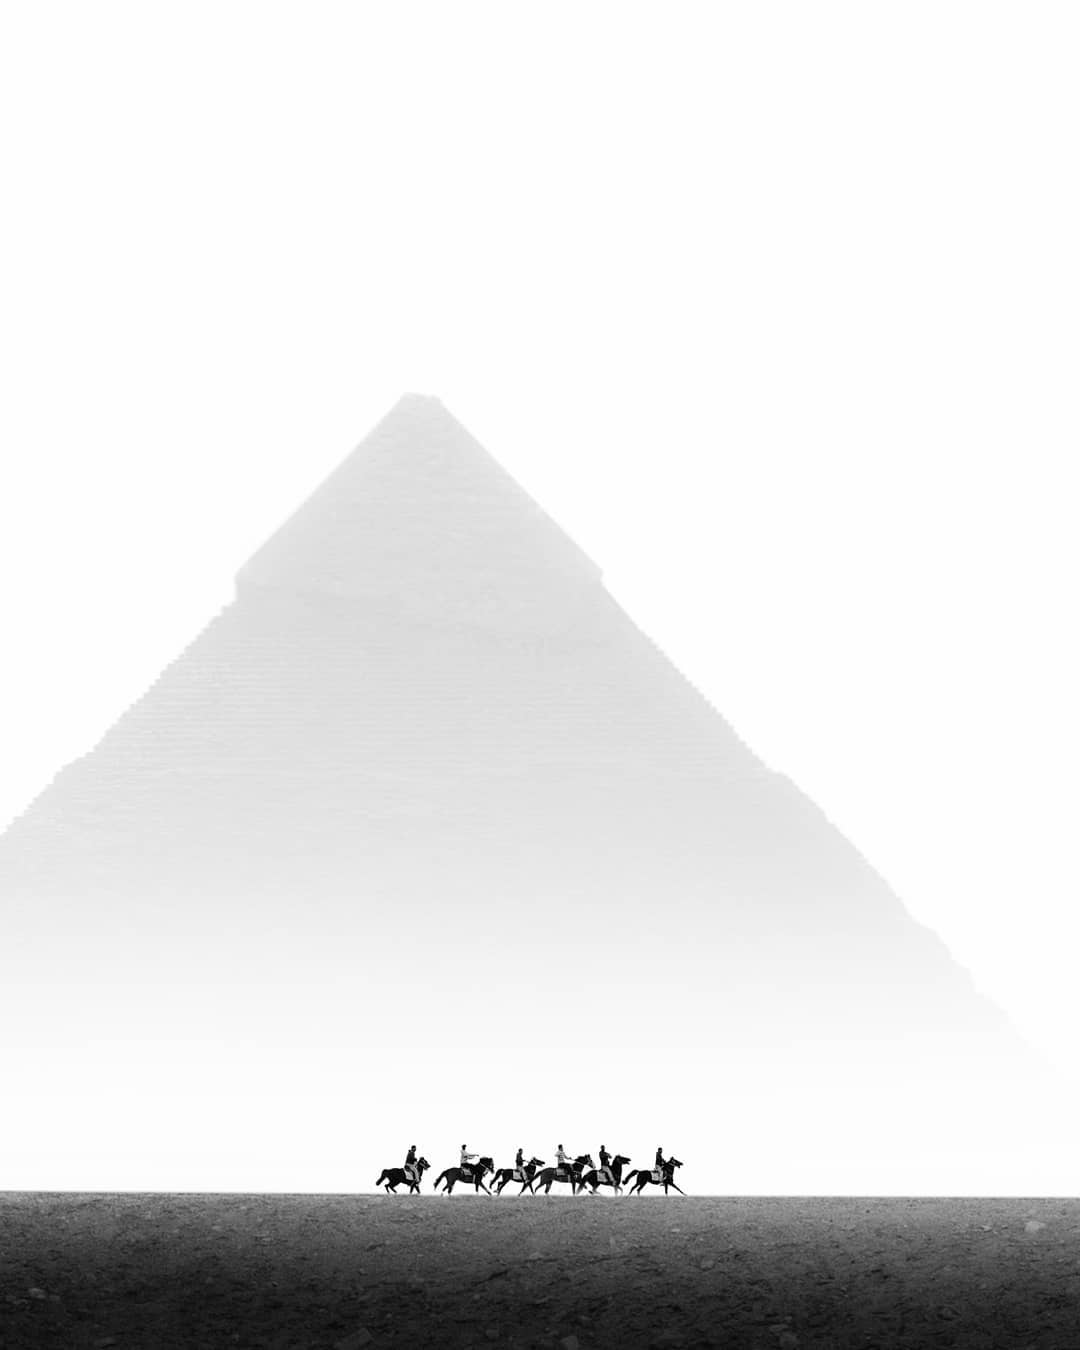 Verstilde beelden van de piramides in Egypte door Karim Amr